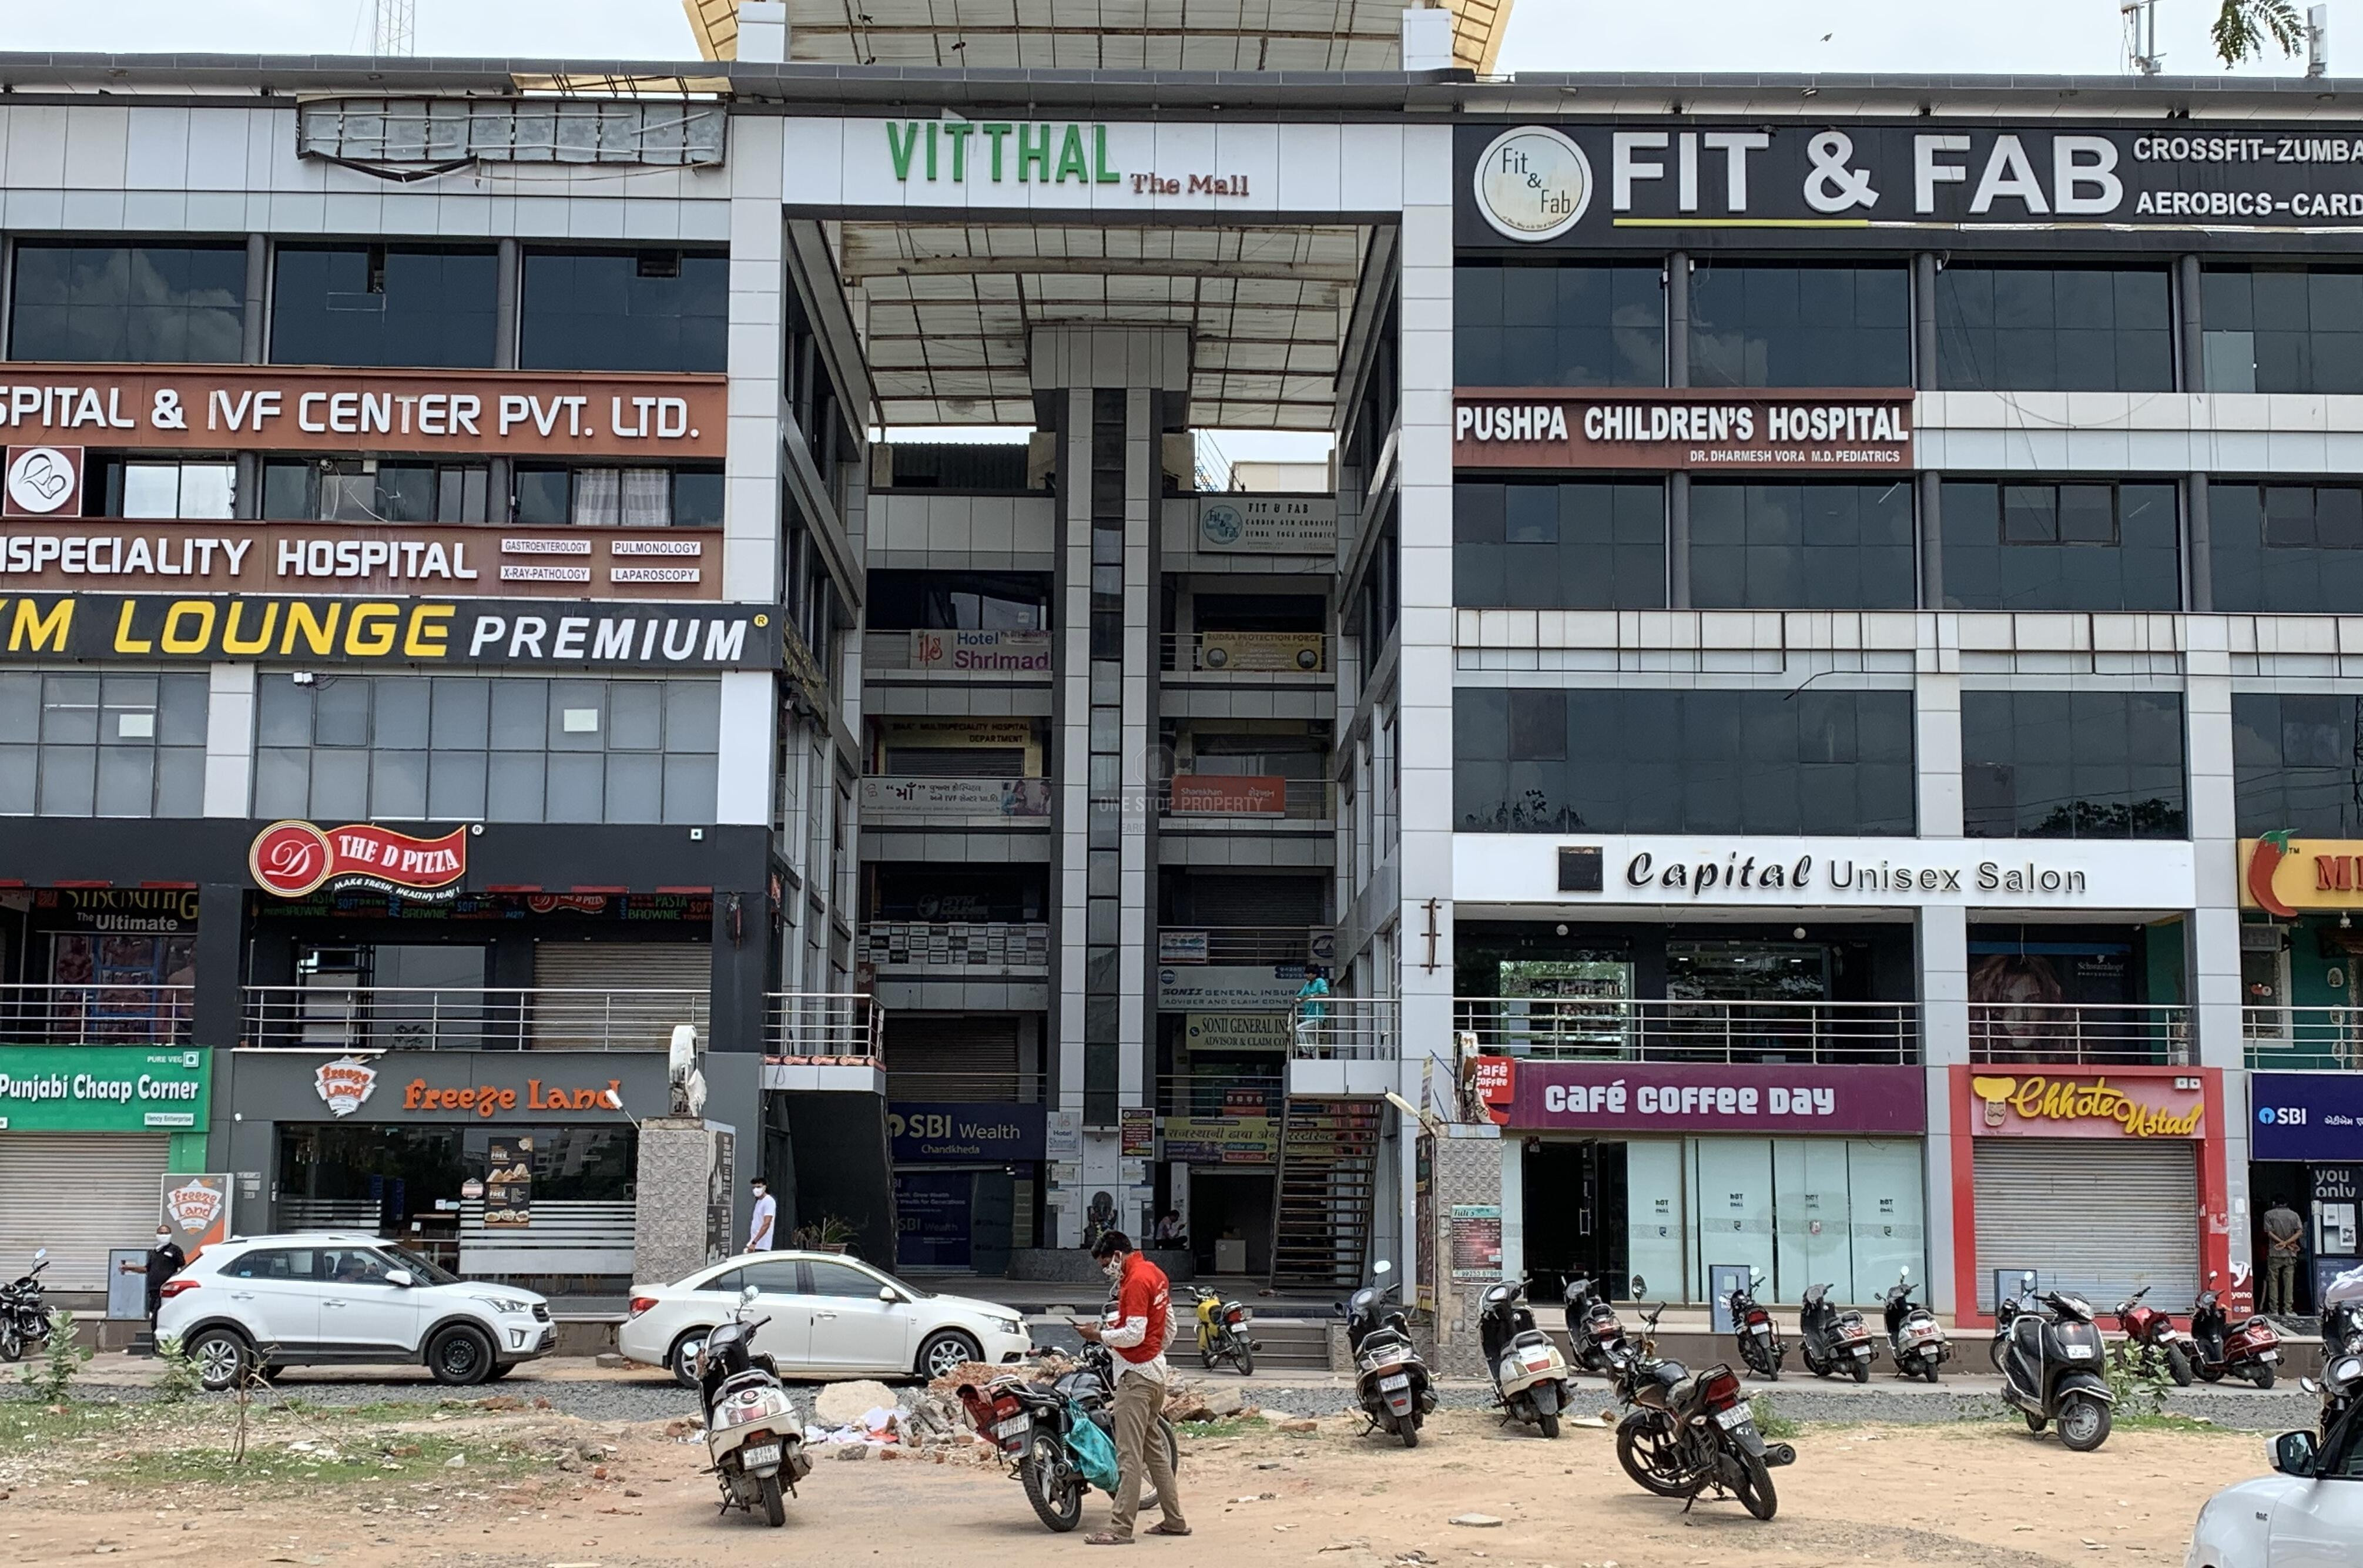 Vitthal Mall